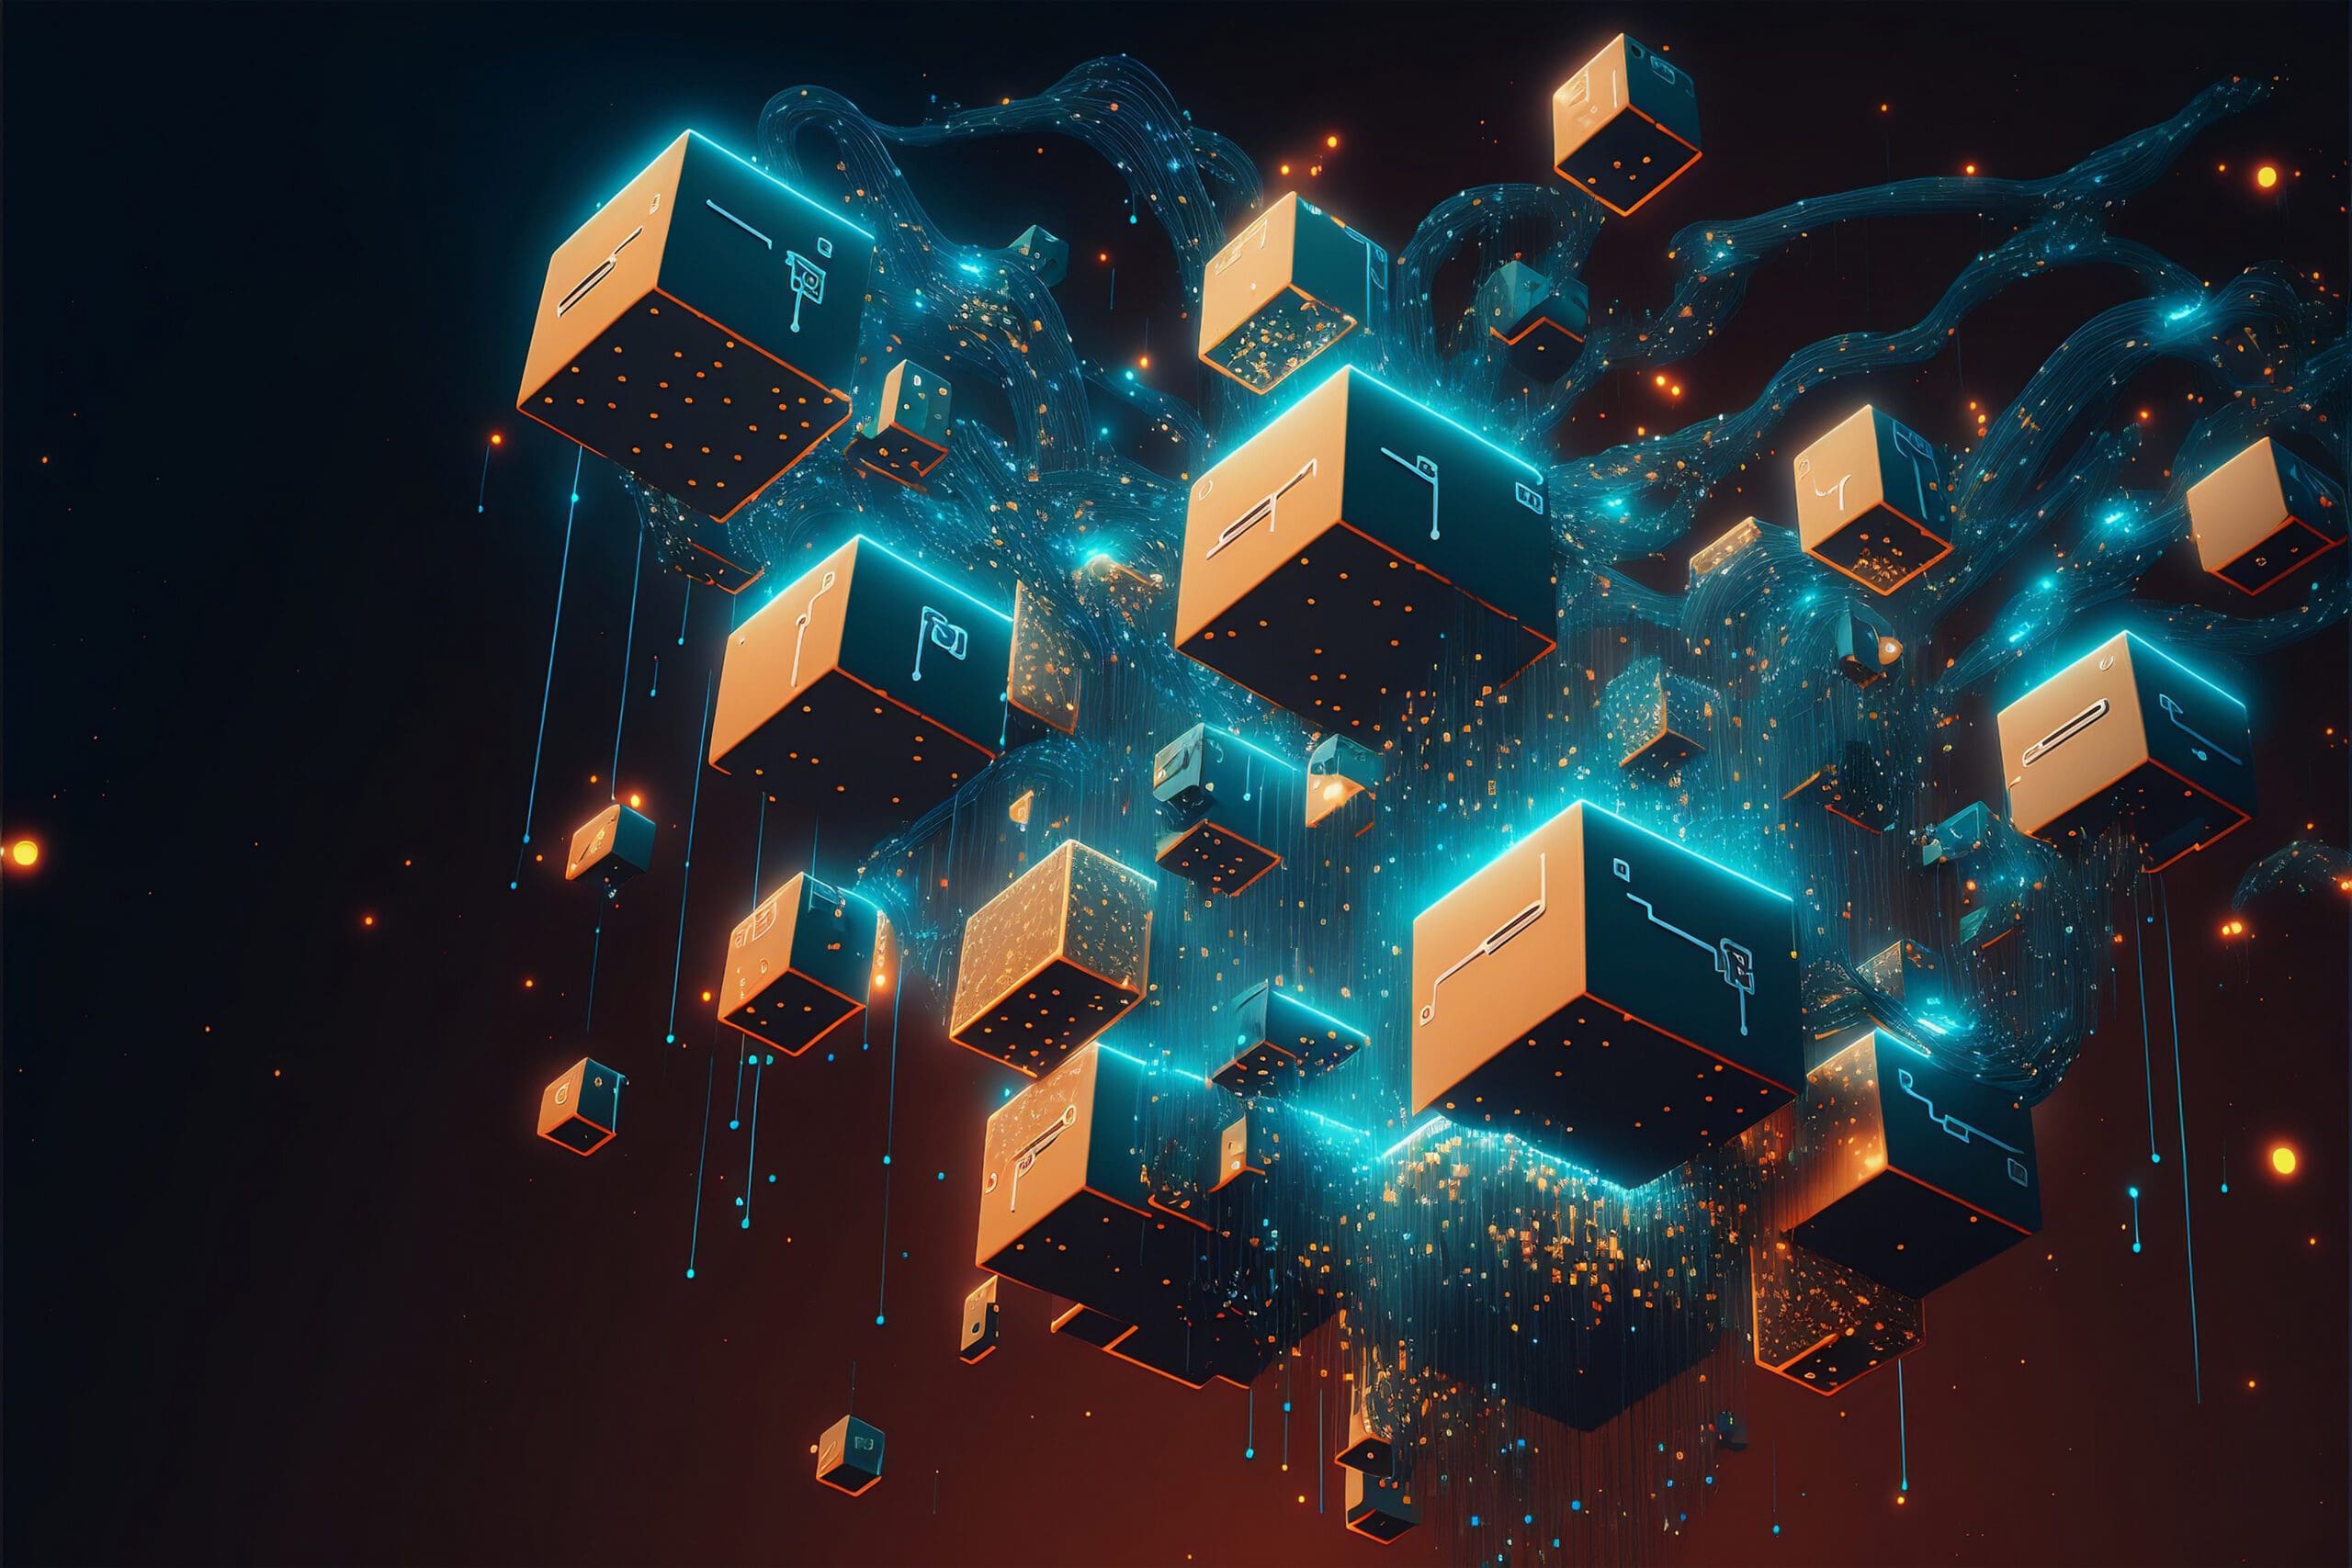 Digitale Darstellung mehrerer ineinandergreifender Blockchain-Blöcke, verbunden durch glühende Linien, die die vernetzte und dezentrale Struktur der Blockchain-Technologie visualisieren.